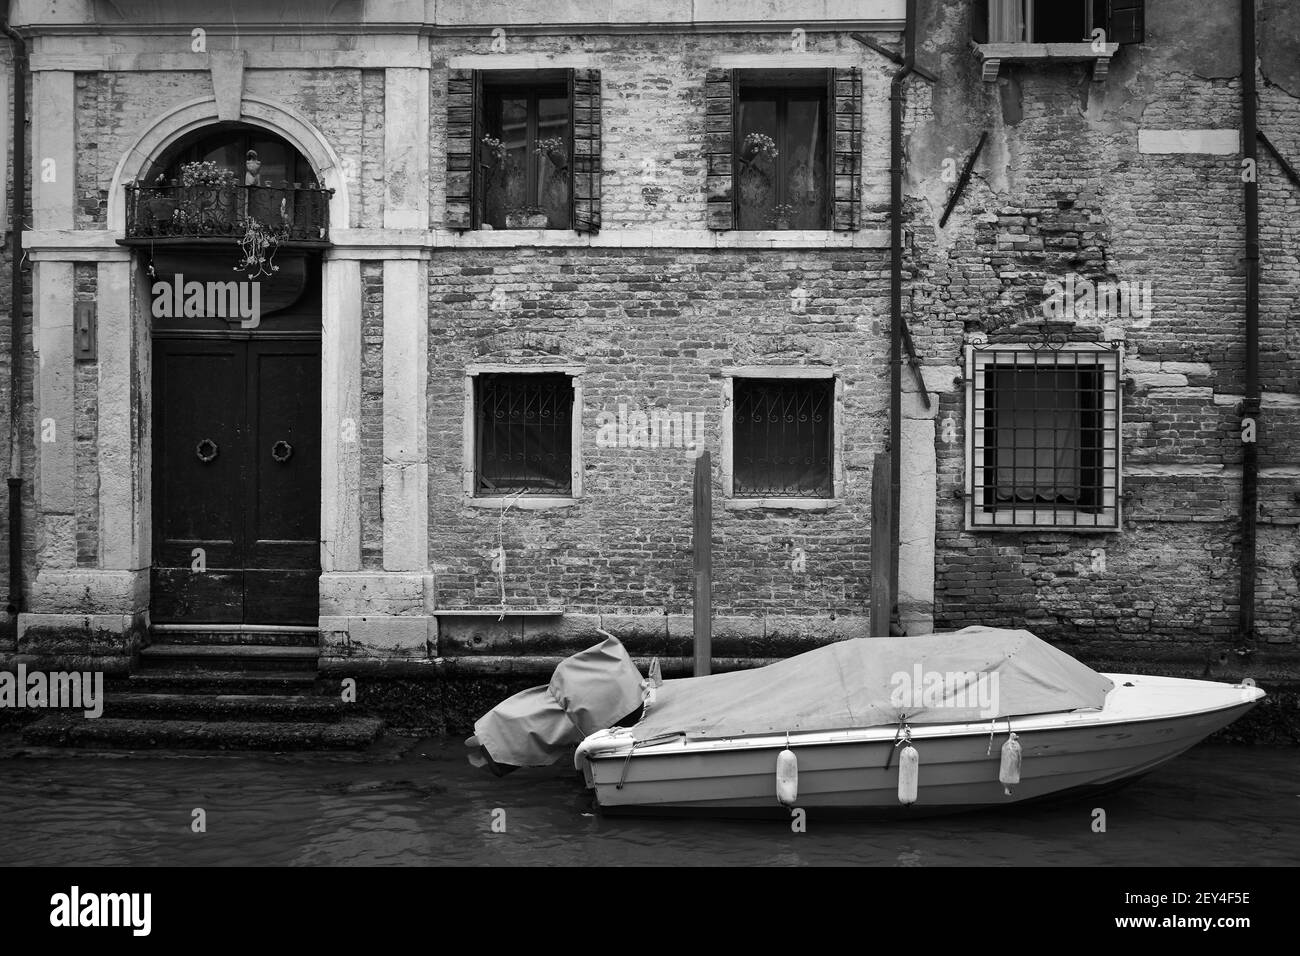 Canal vénitien avec ancienne maison et bateau amarré, Venise, Italie. Photographie en noir et blanc, paysage urbain Banque D'Images